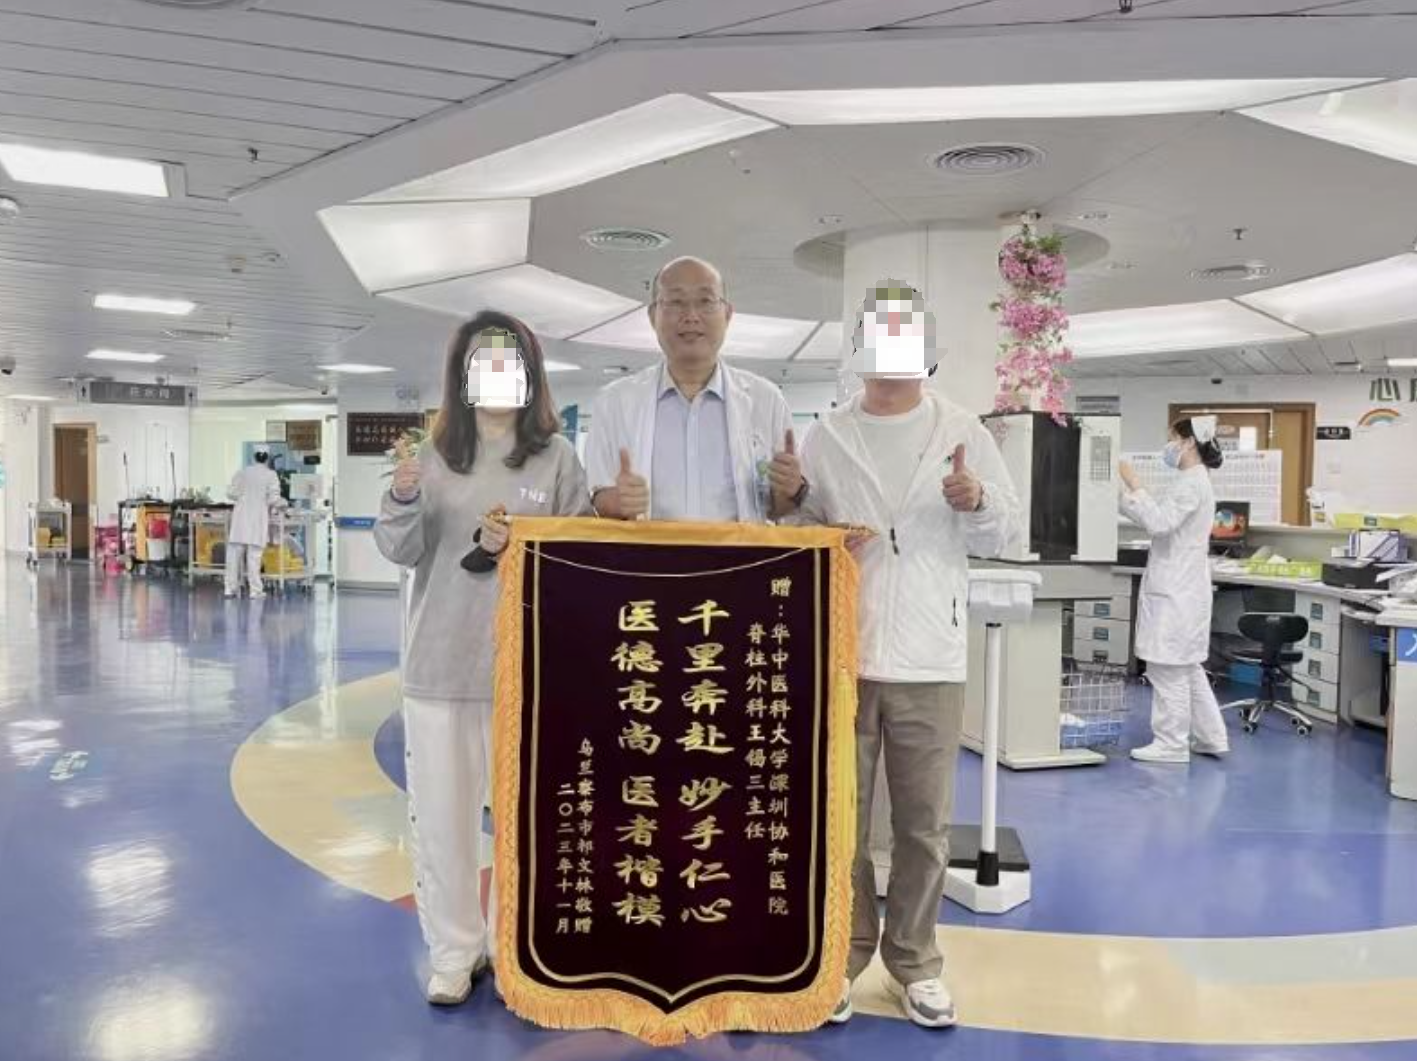 86岁内蒙古老人腰痛下不了床 深圳医生奔赴千里做手术